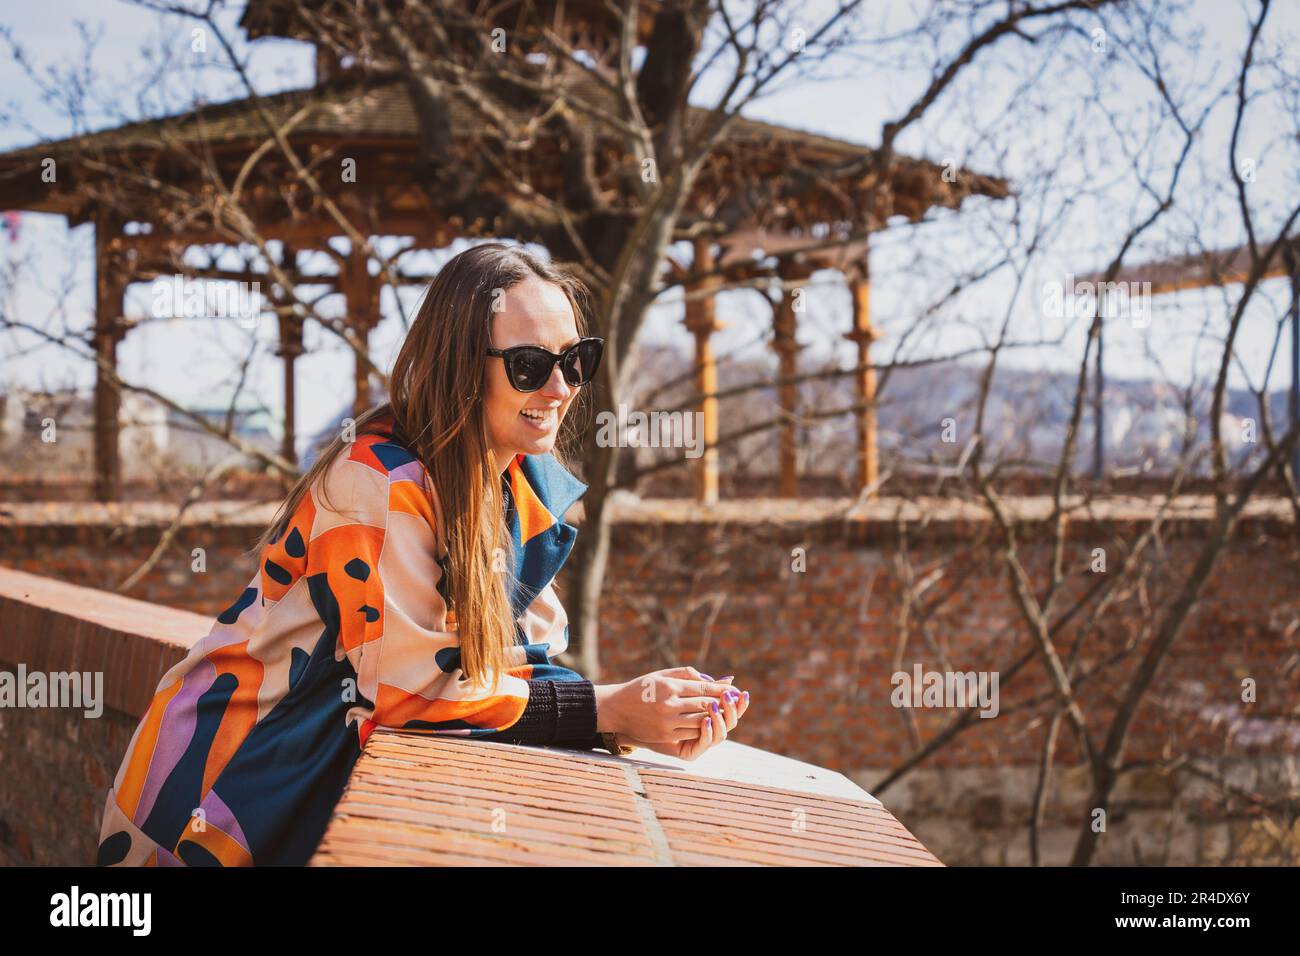 Junge Frau mit Sonnenbrille in einer bunten Jacke in Budapest Stockfoto